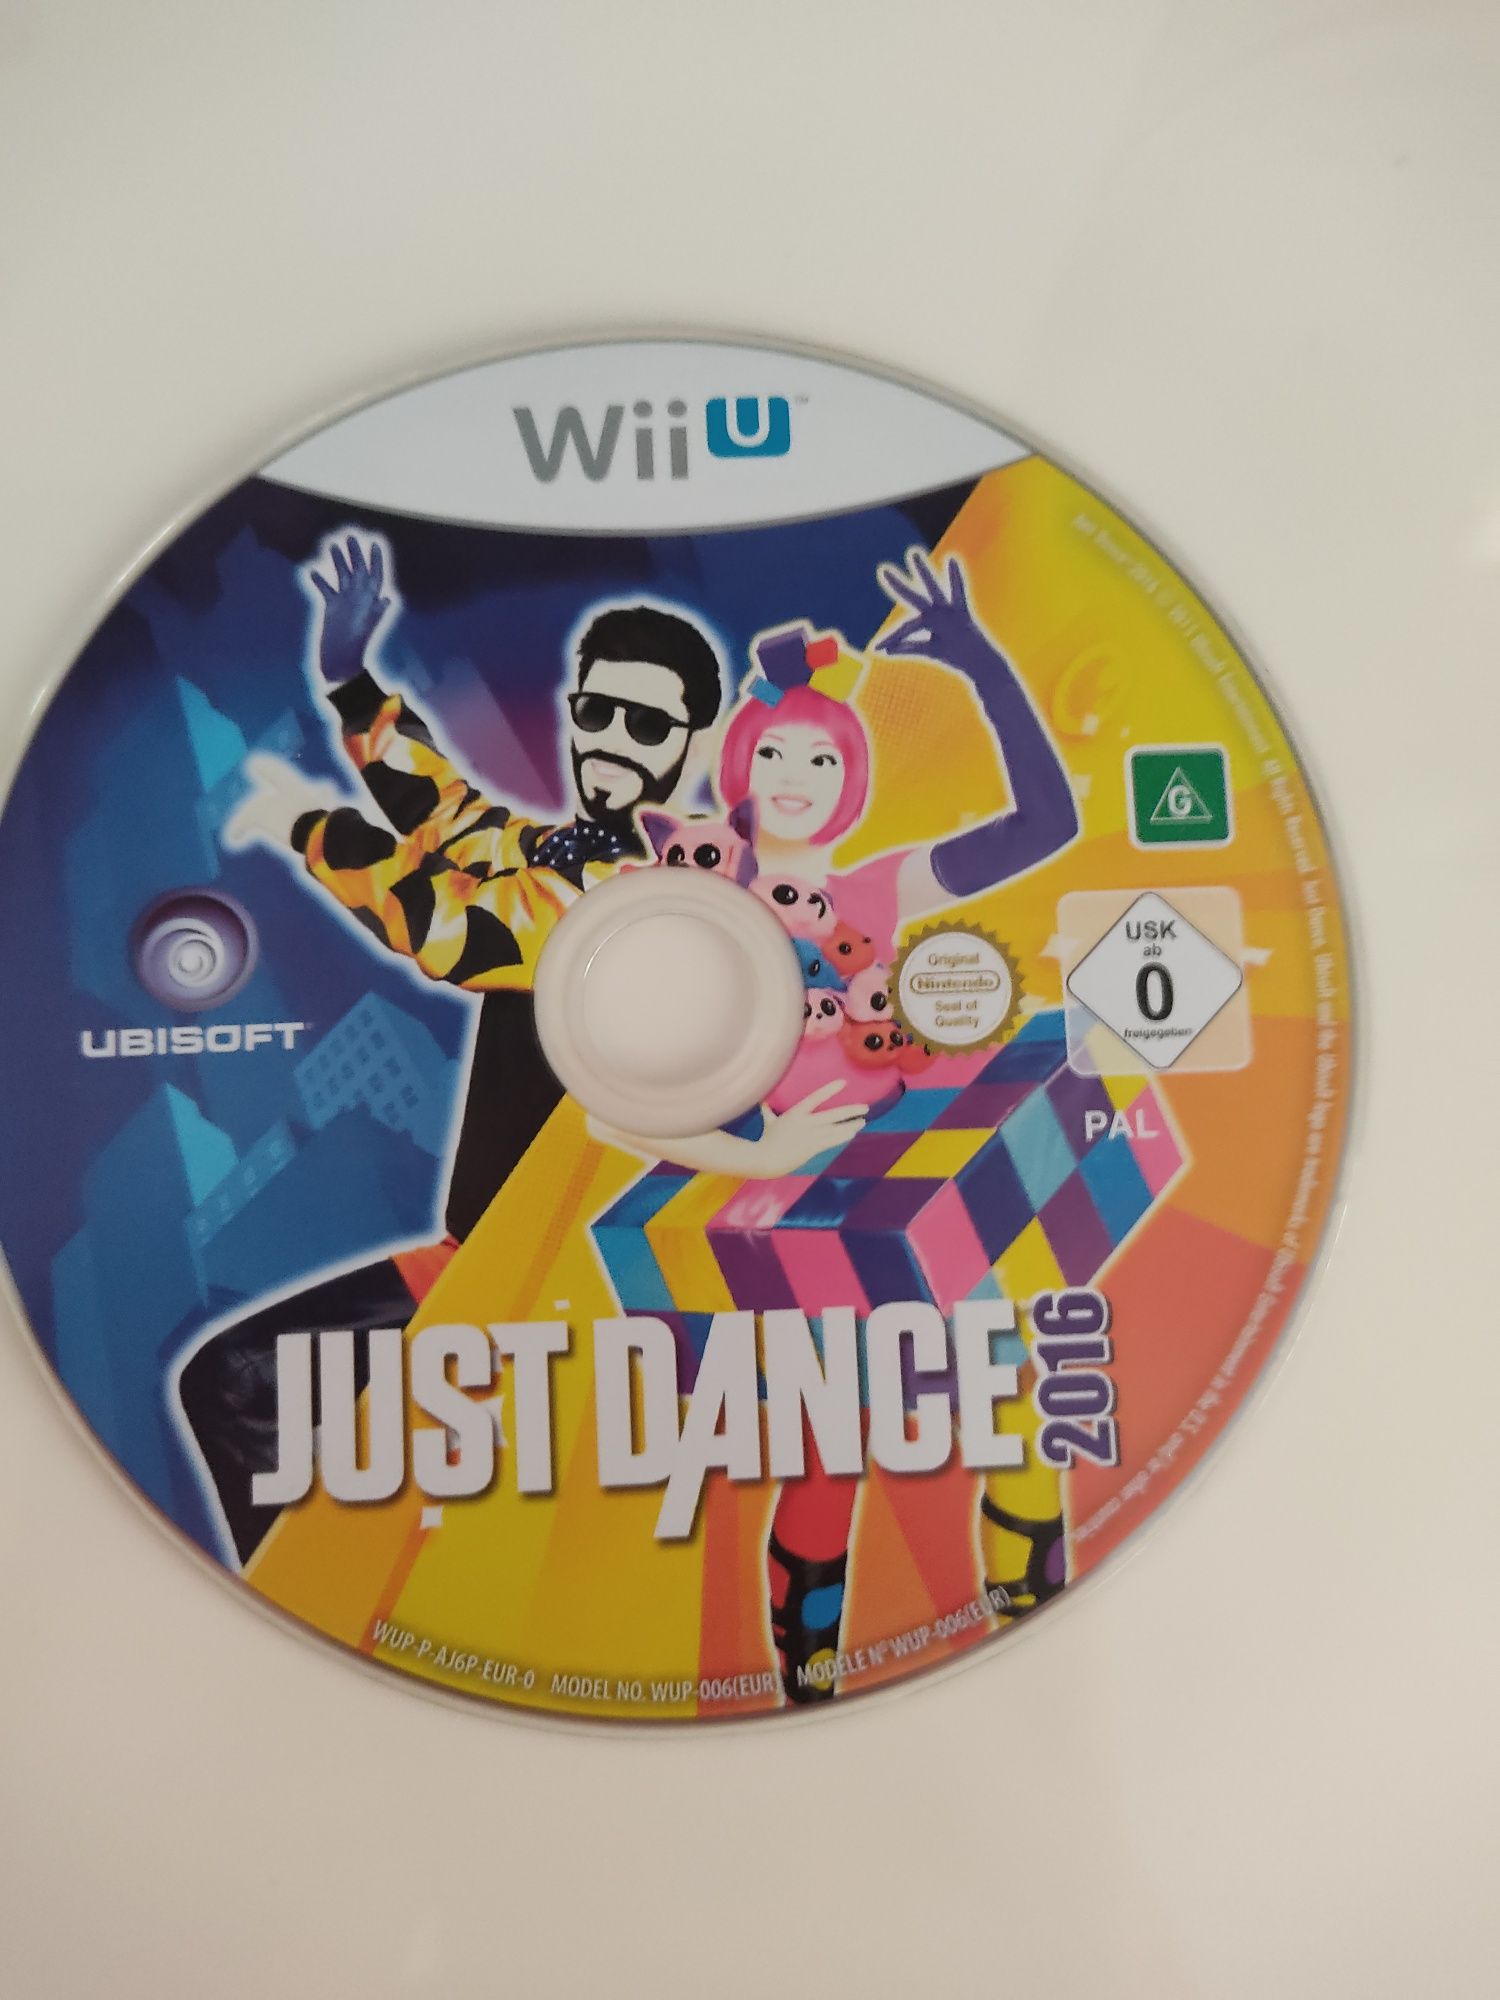 Just dance 2016 Wii u